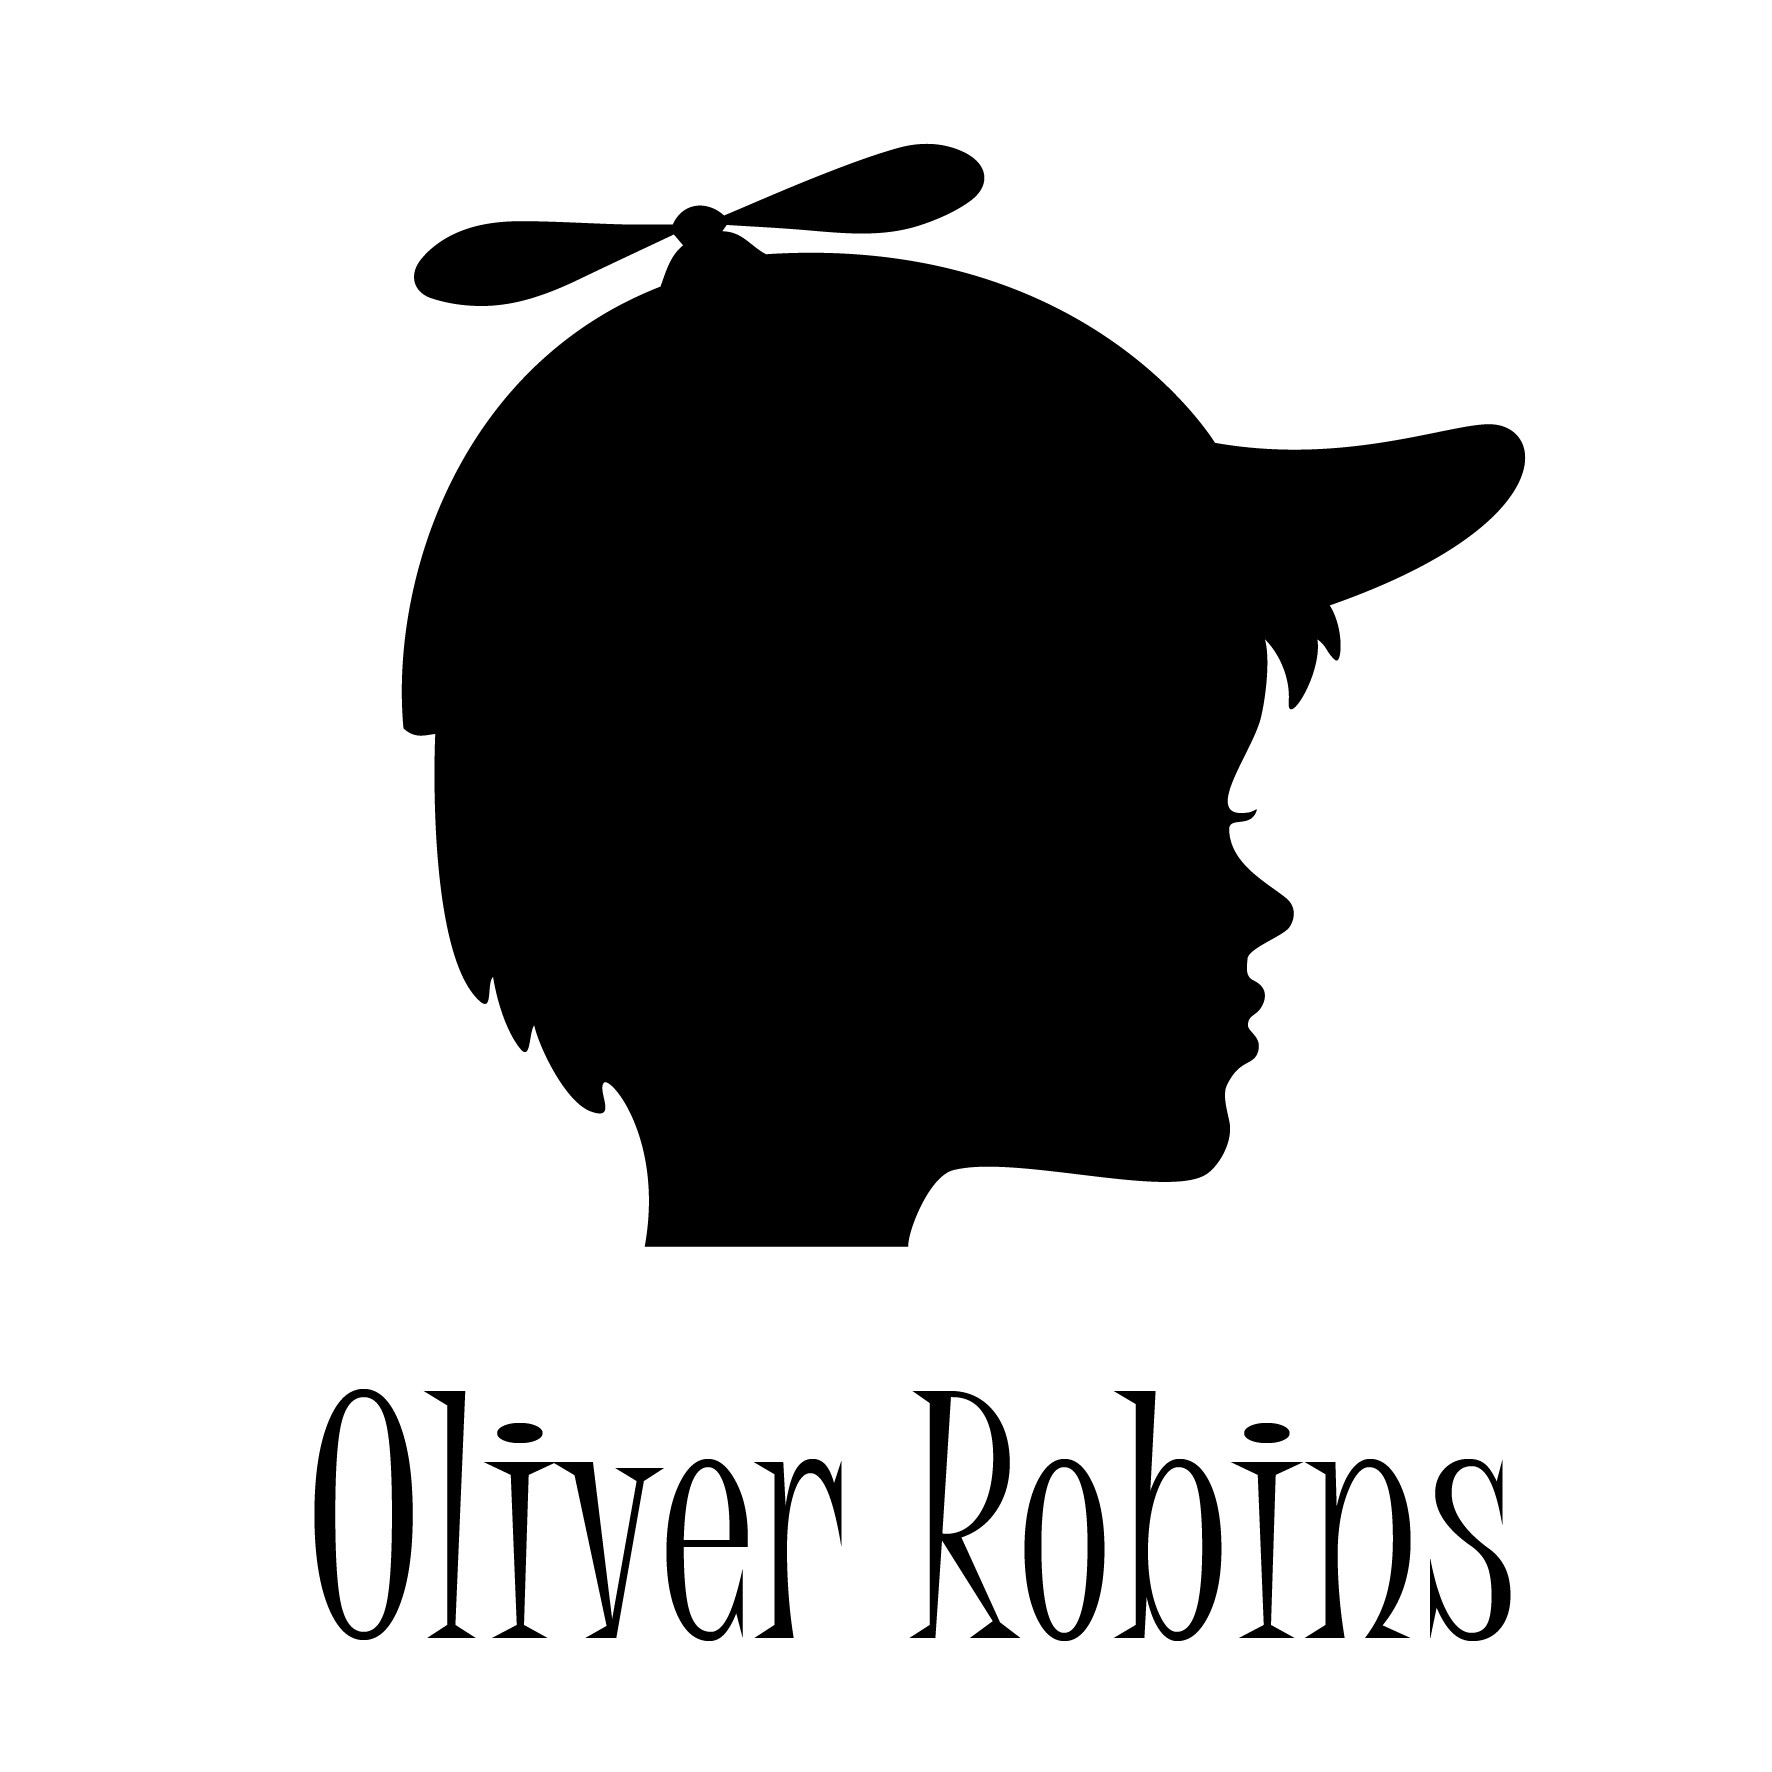 Oliver Robins